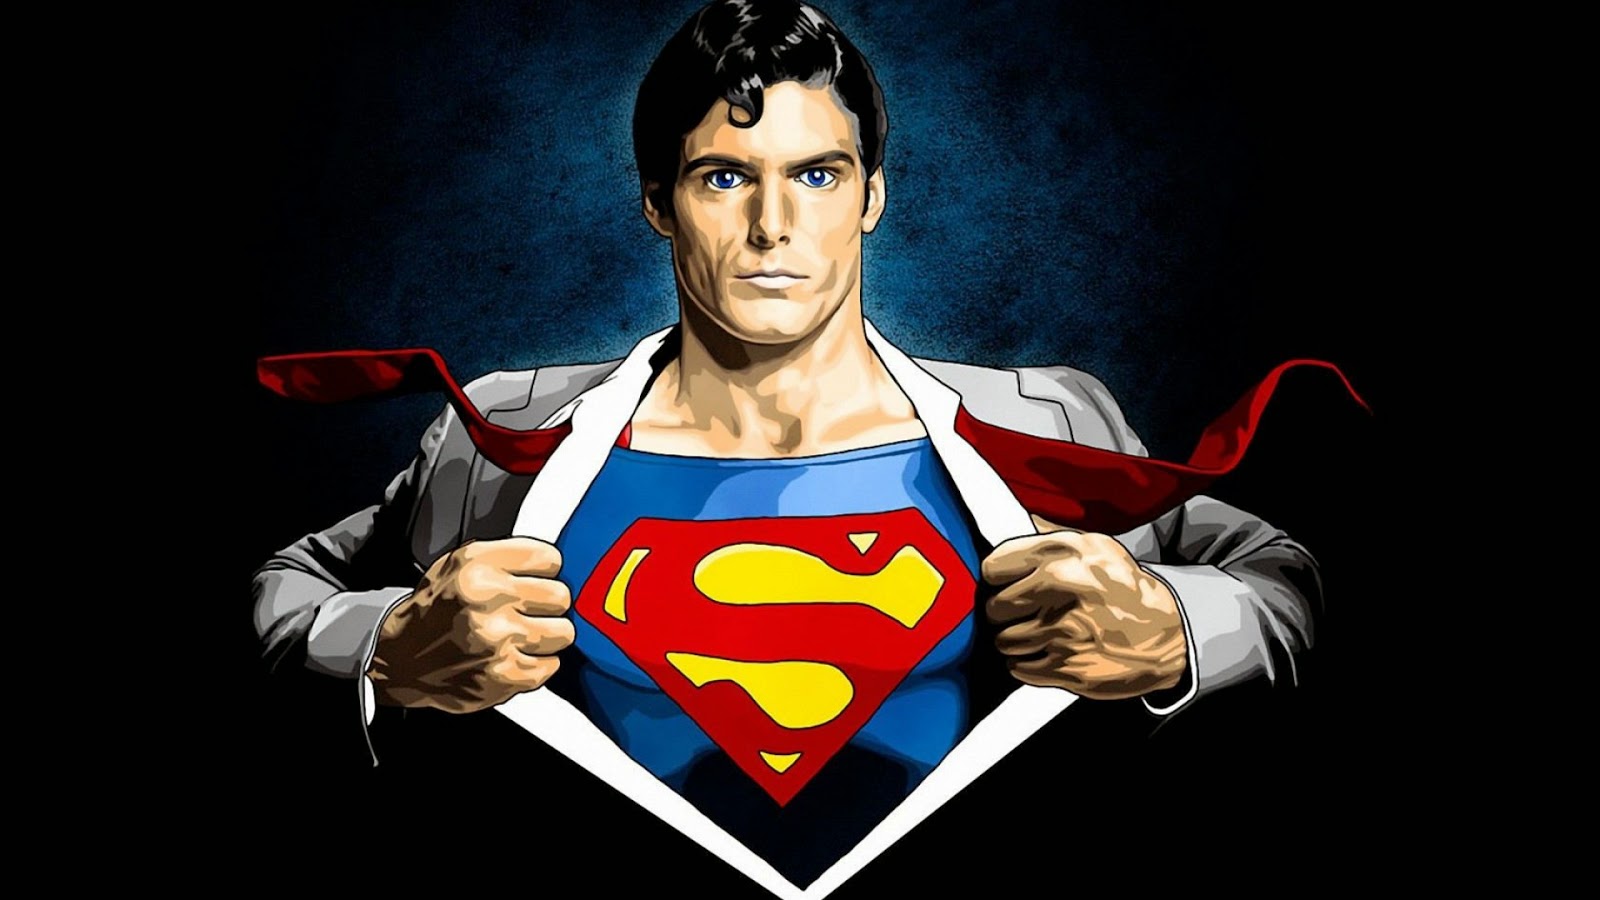 Kumpulan Gambar Baru Superman Gambar Lucu Terbaru Cartoon Animation Pictures